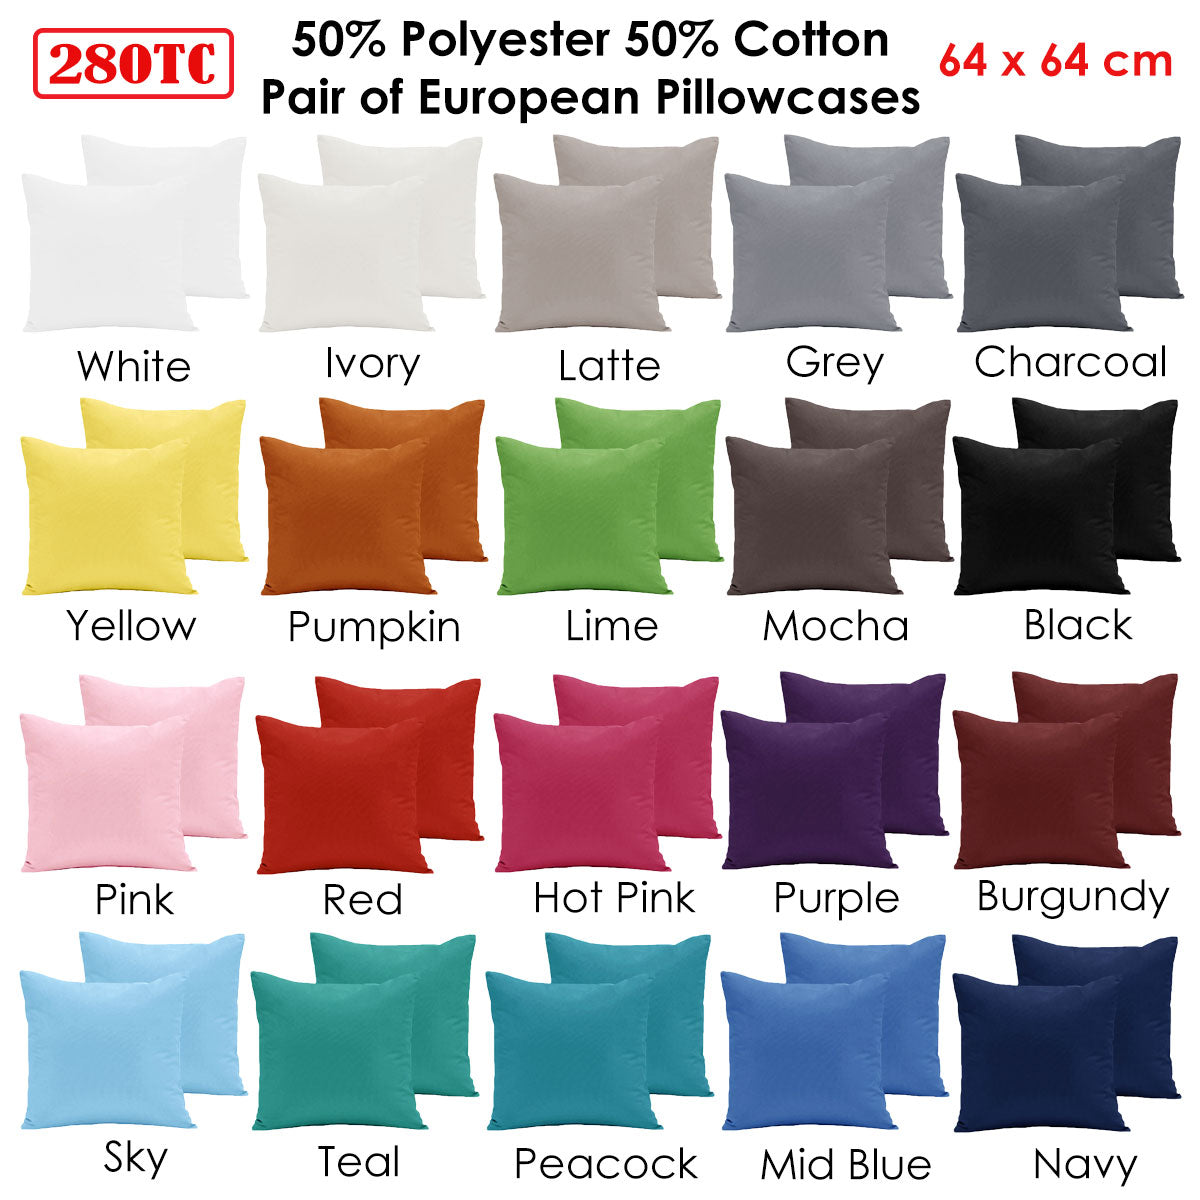 Pair of  280TC Polyester Cotton European Pillowcases Sky